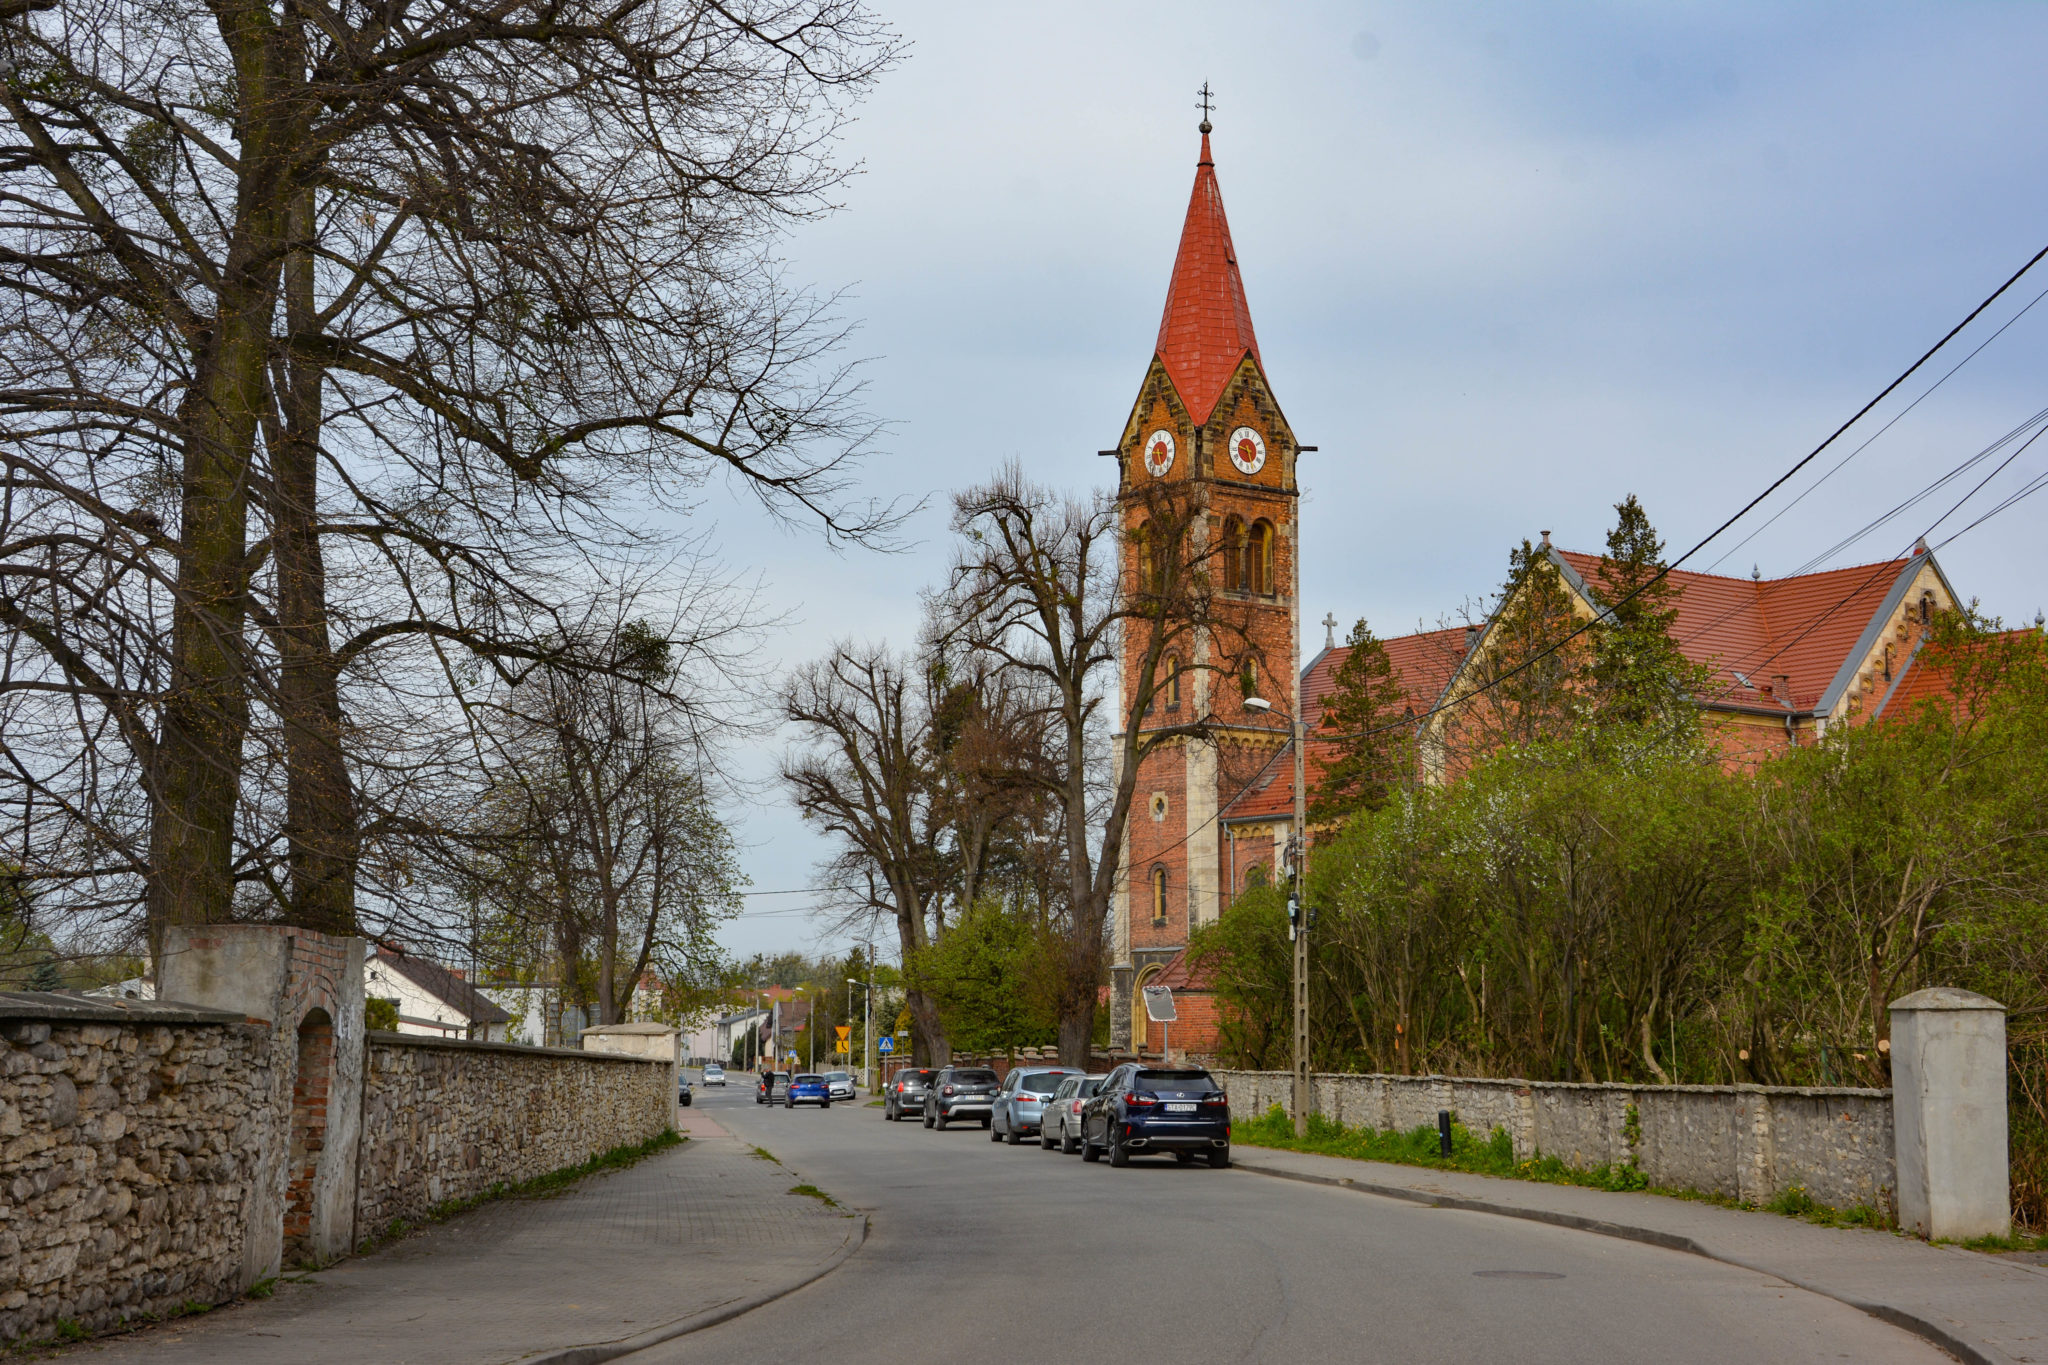 widok ulicy, po prawej stronie zaparkowane samochody osobowe, w tle wieża kościołu